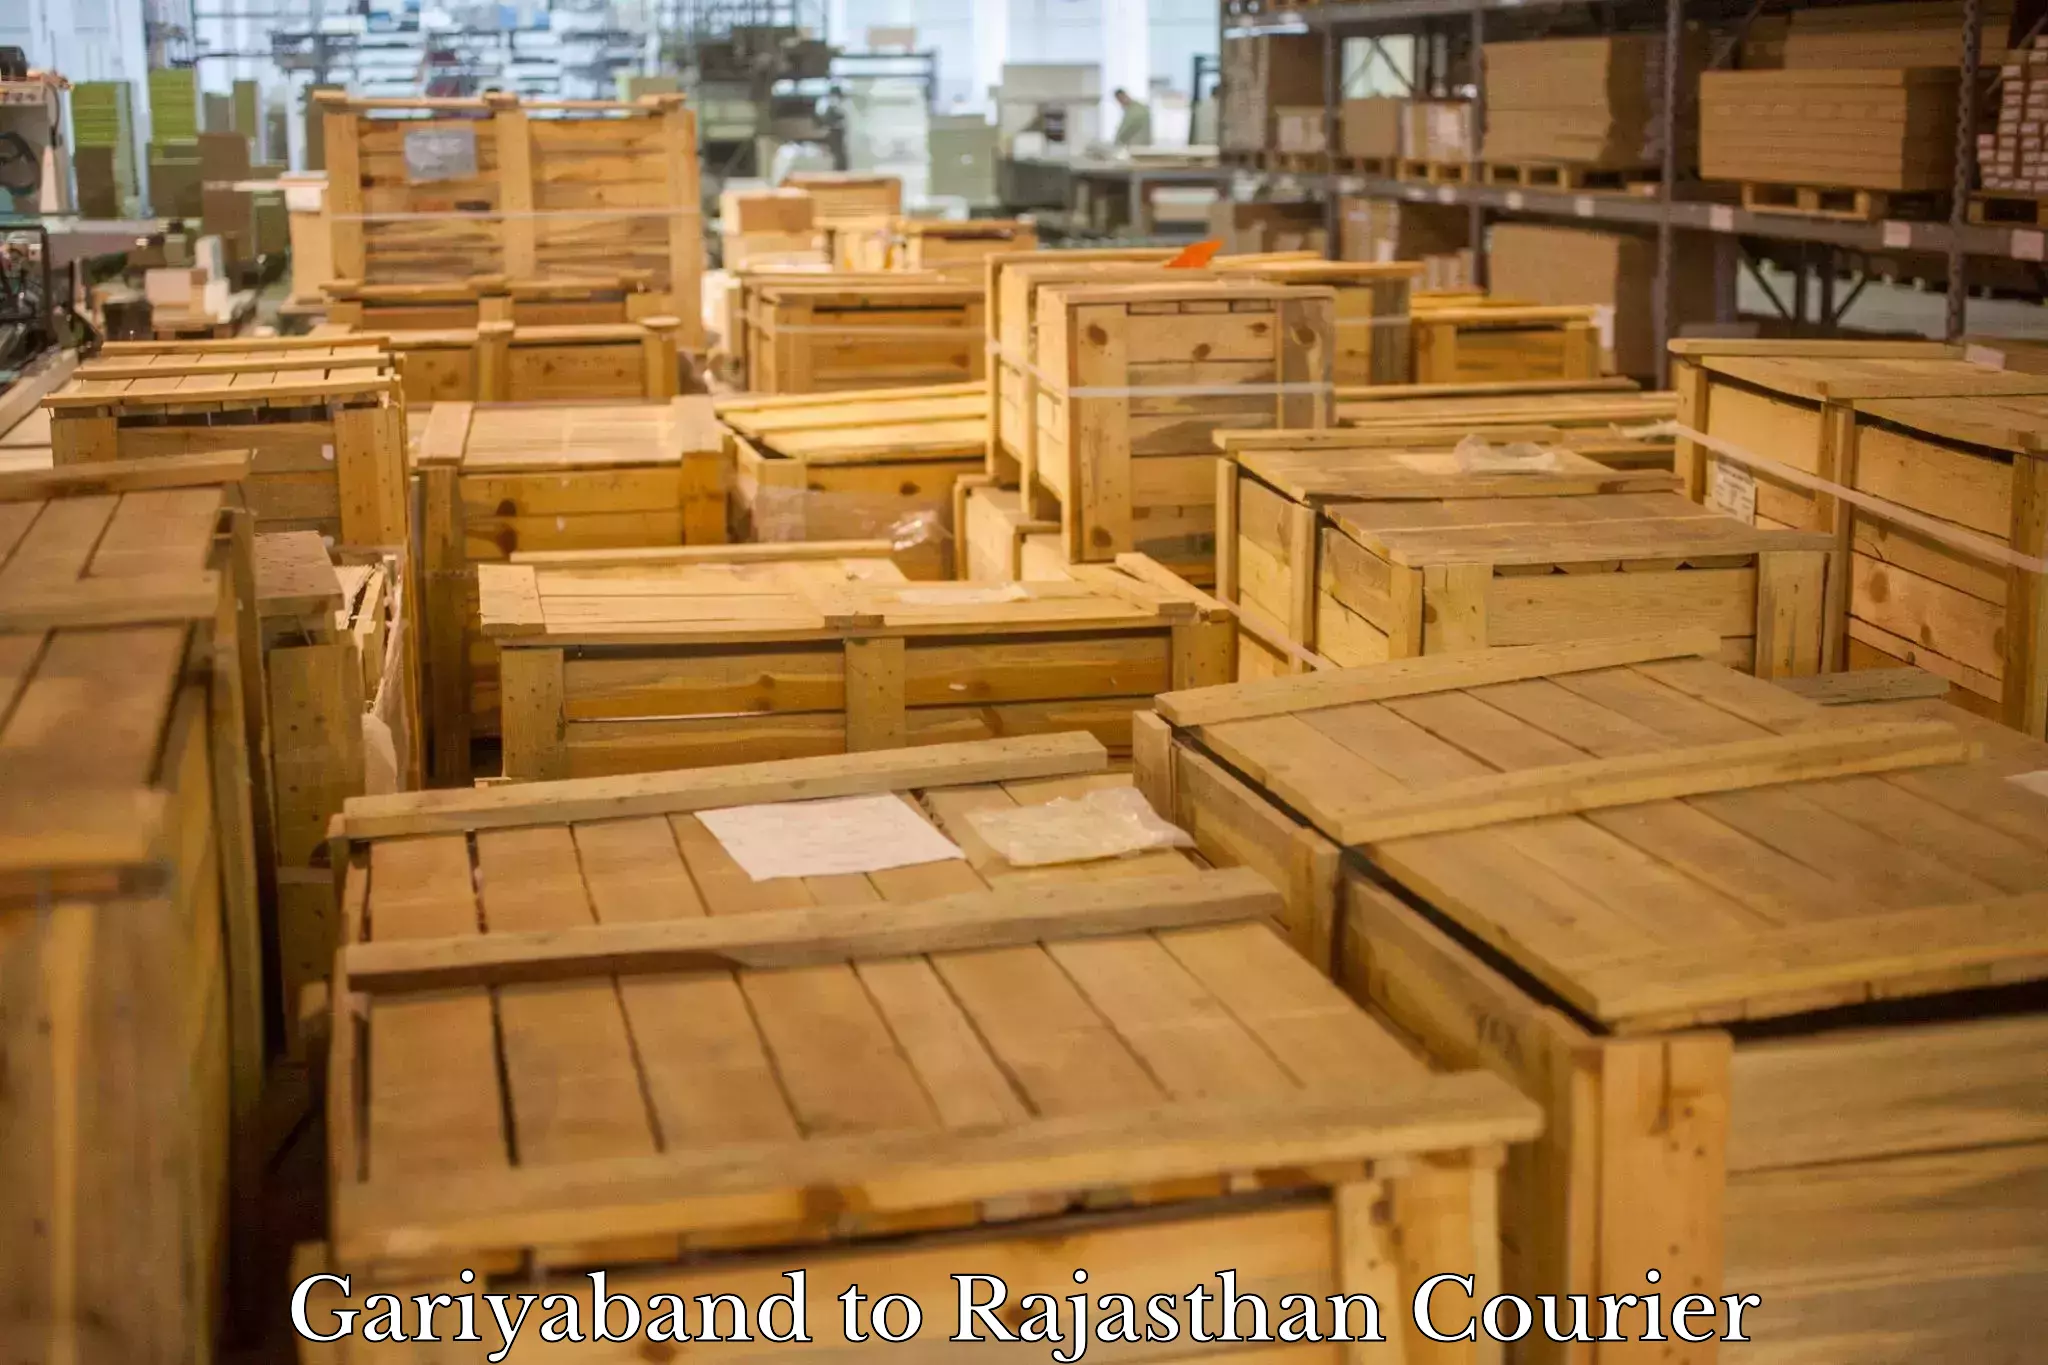 International parcel service Gariyaband to Rajasthan